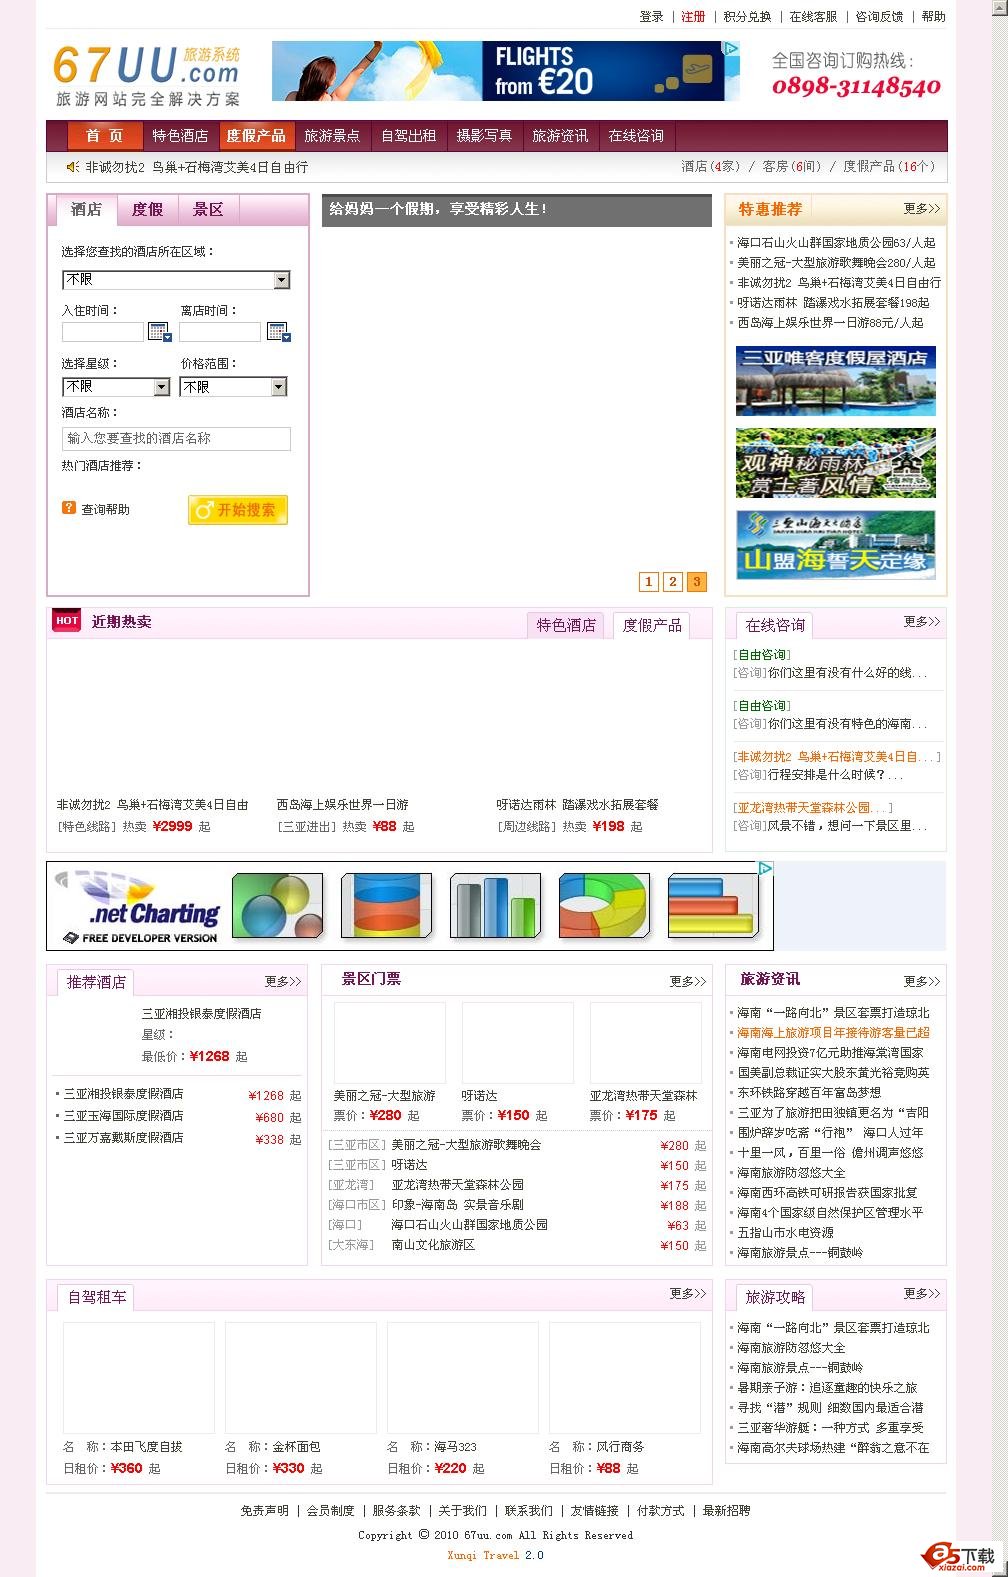 讯奇旅游网站系统 2.0